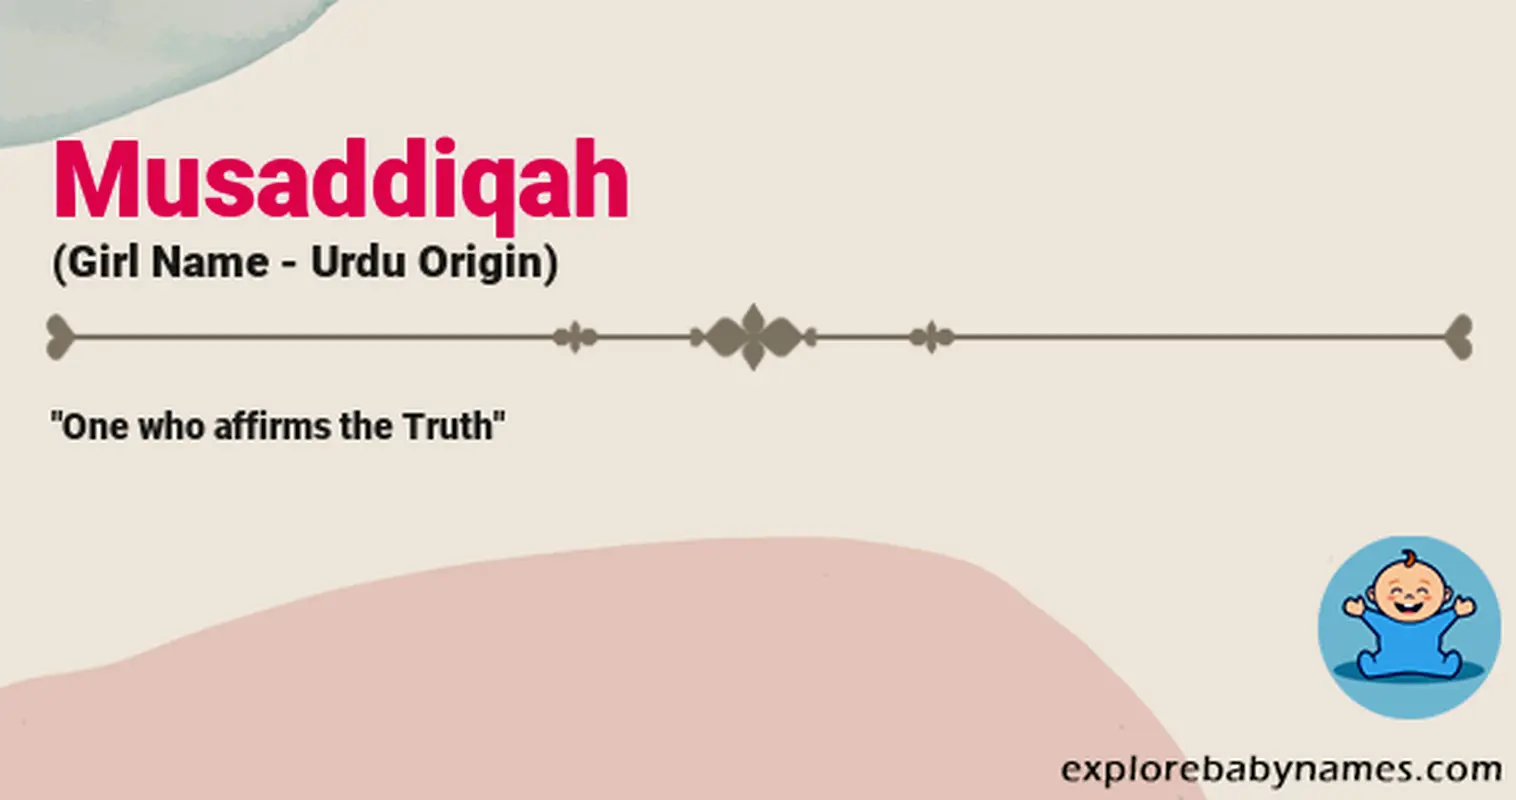 Meaning of Musaddiqah